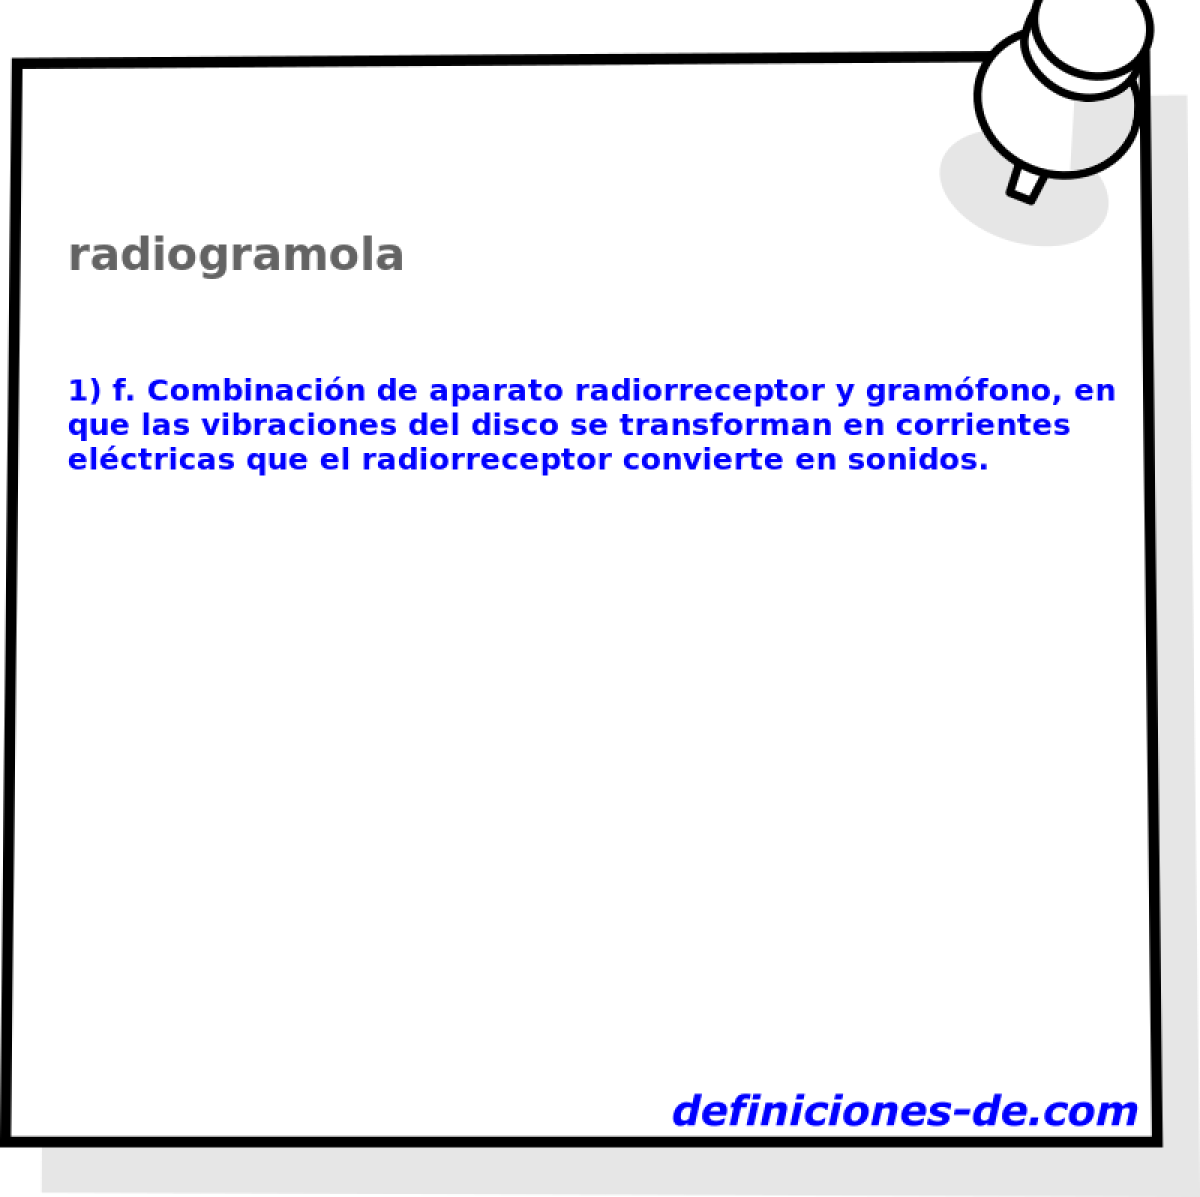 radiogramola 